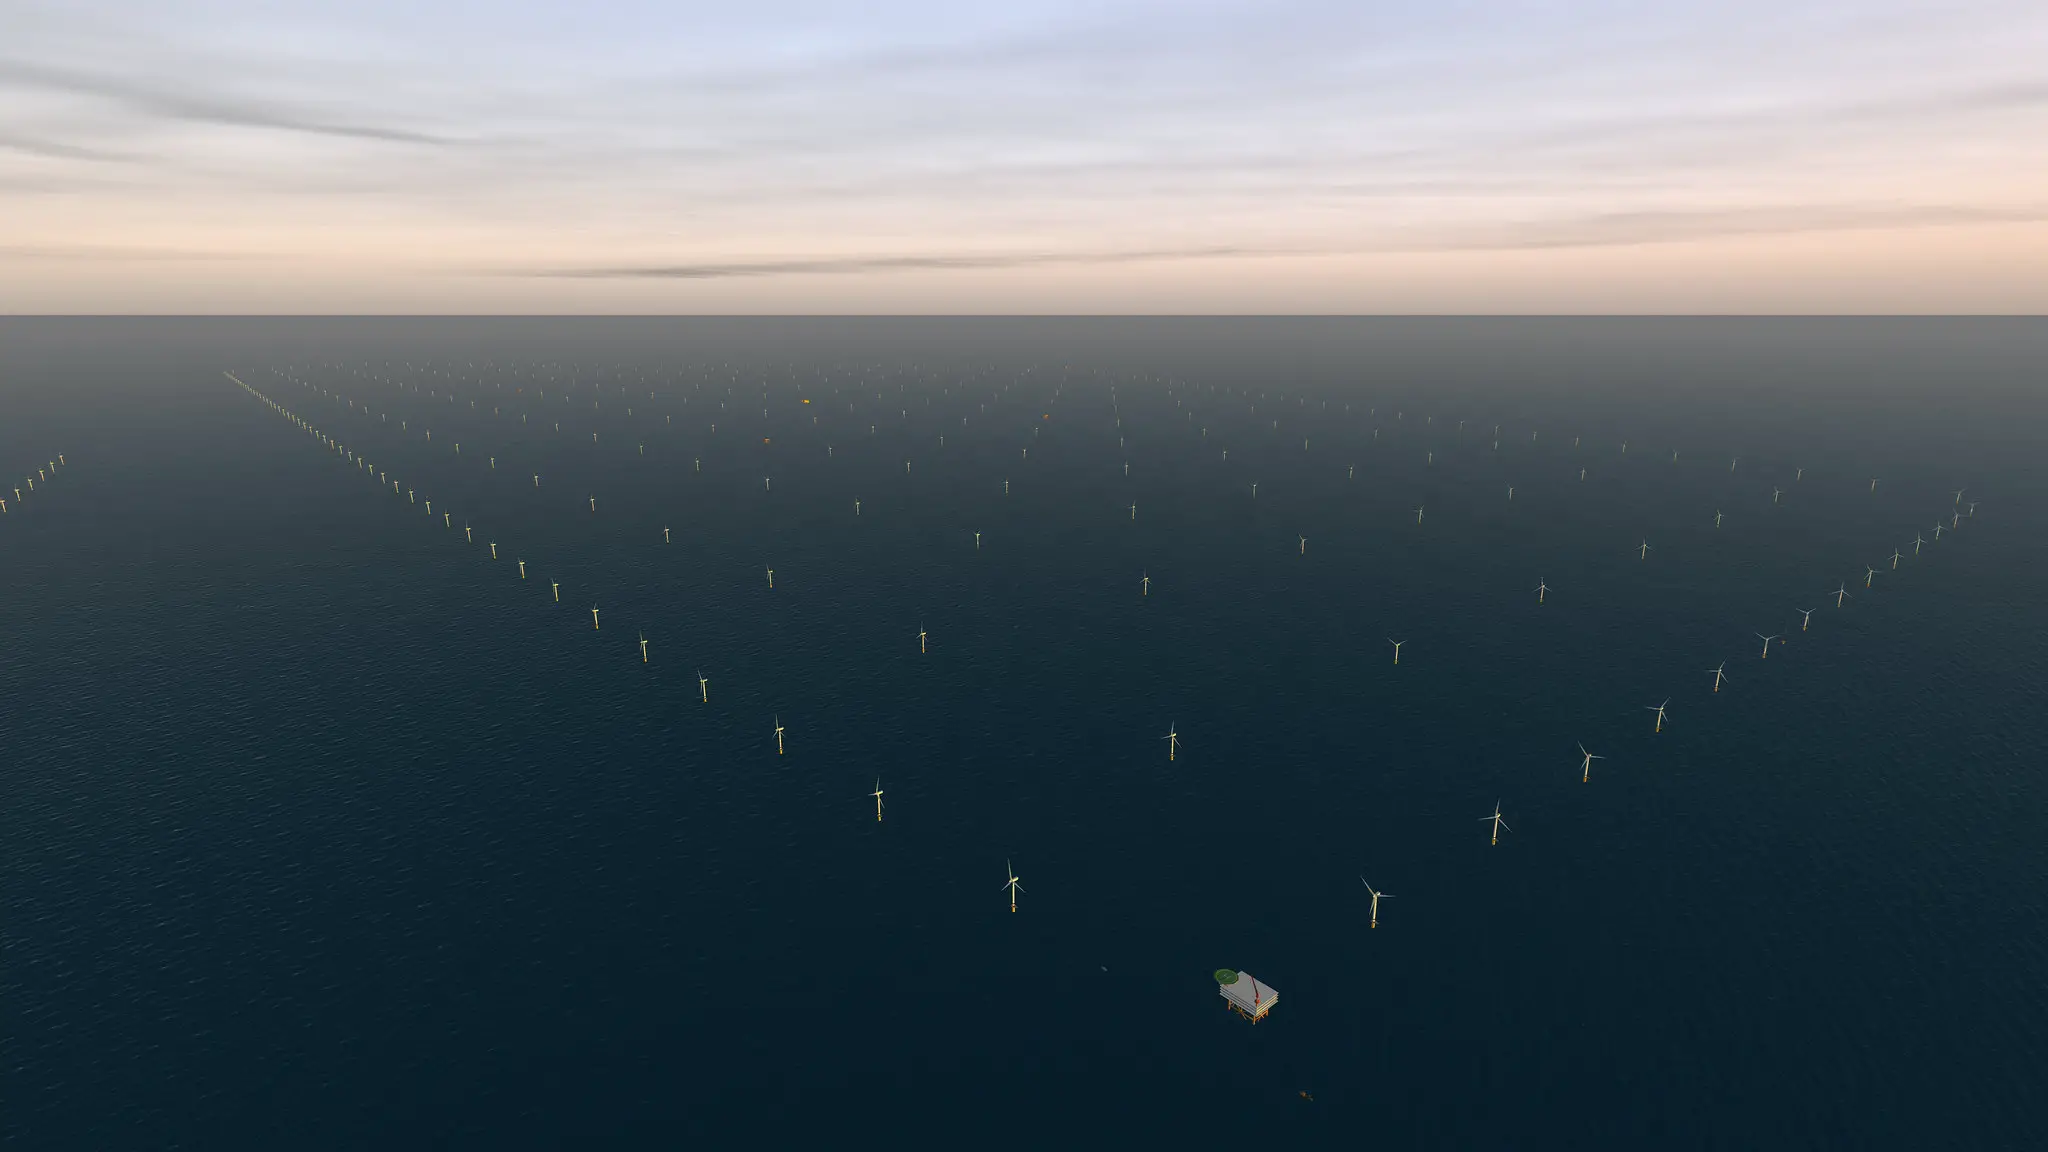 El parque eólico marino más grande del mundo, Dogger Bank, ha comenzado a producir electricidad